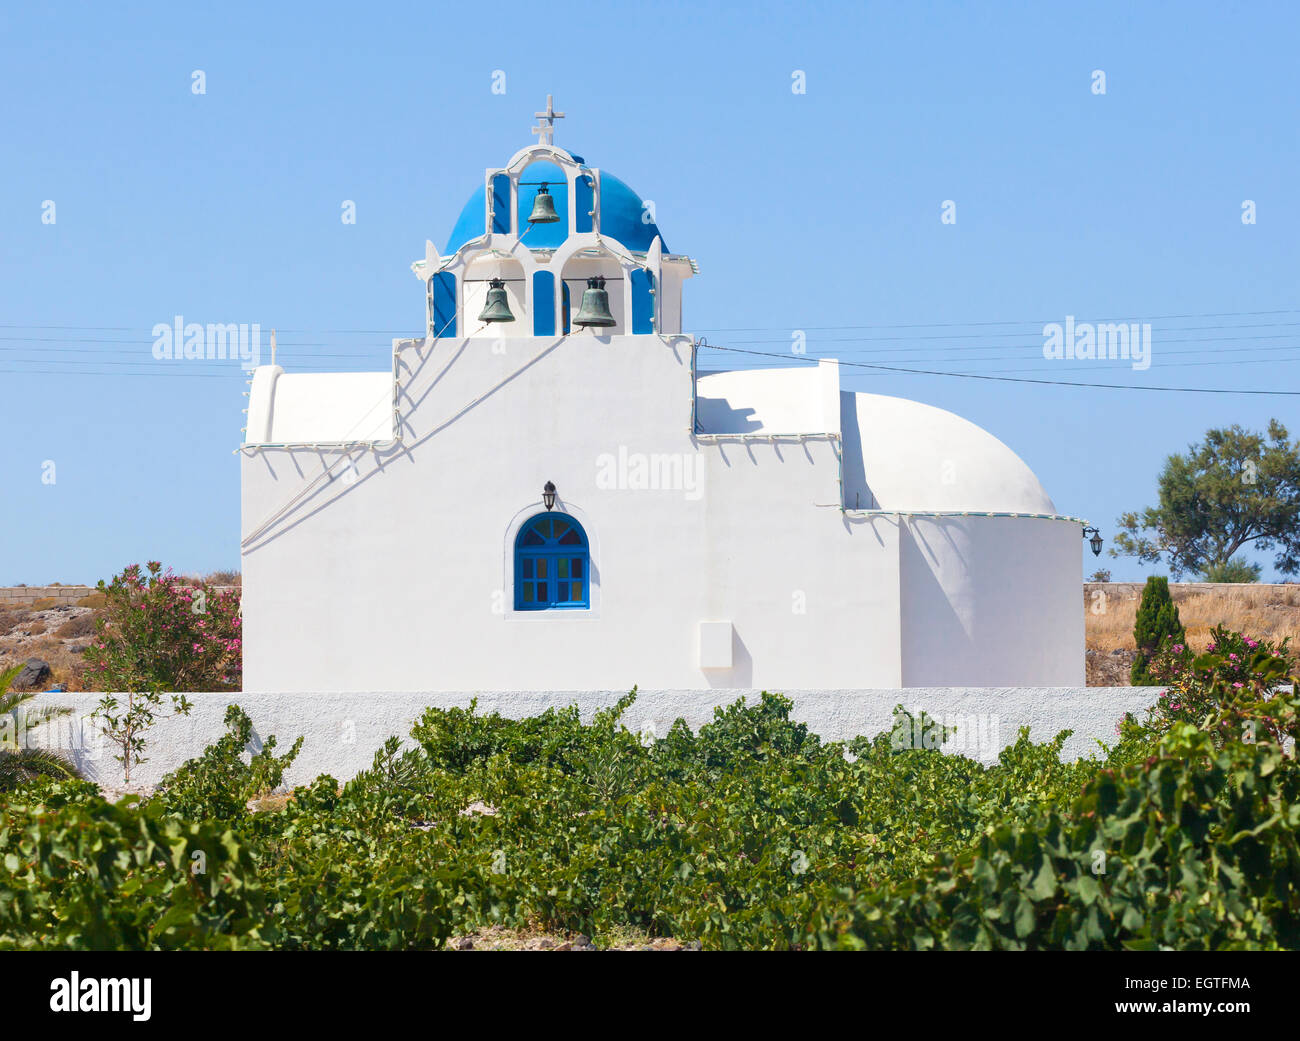 Église avec dôme bleu de la vigne domaine. L'île de Santorin. La Grèce. Banque D'Images